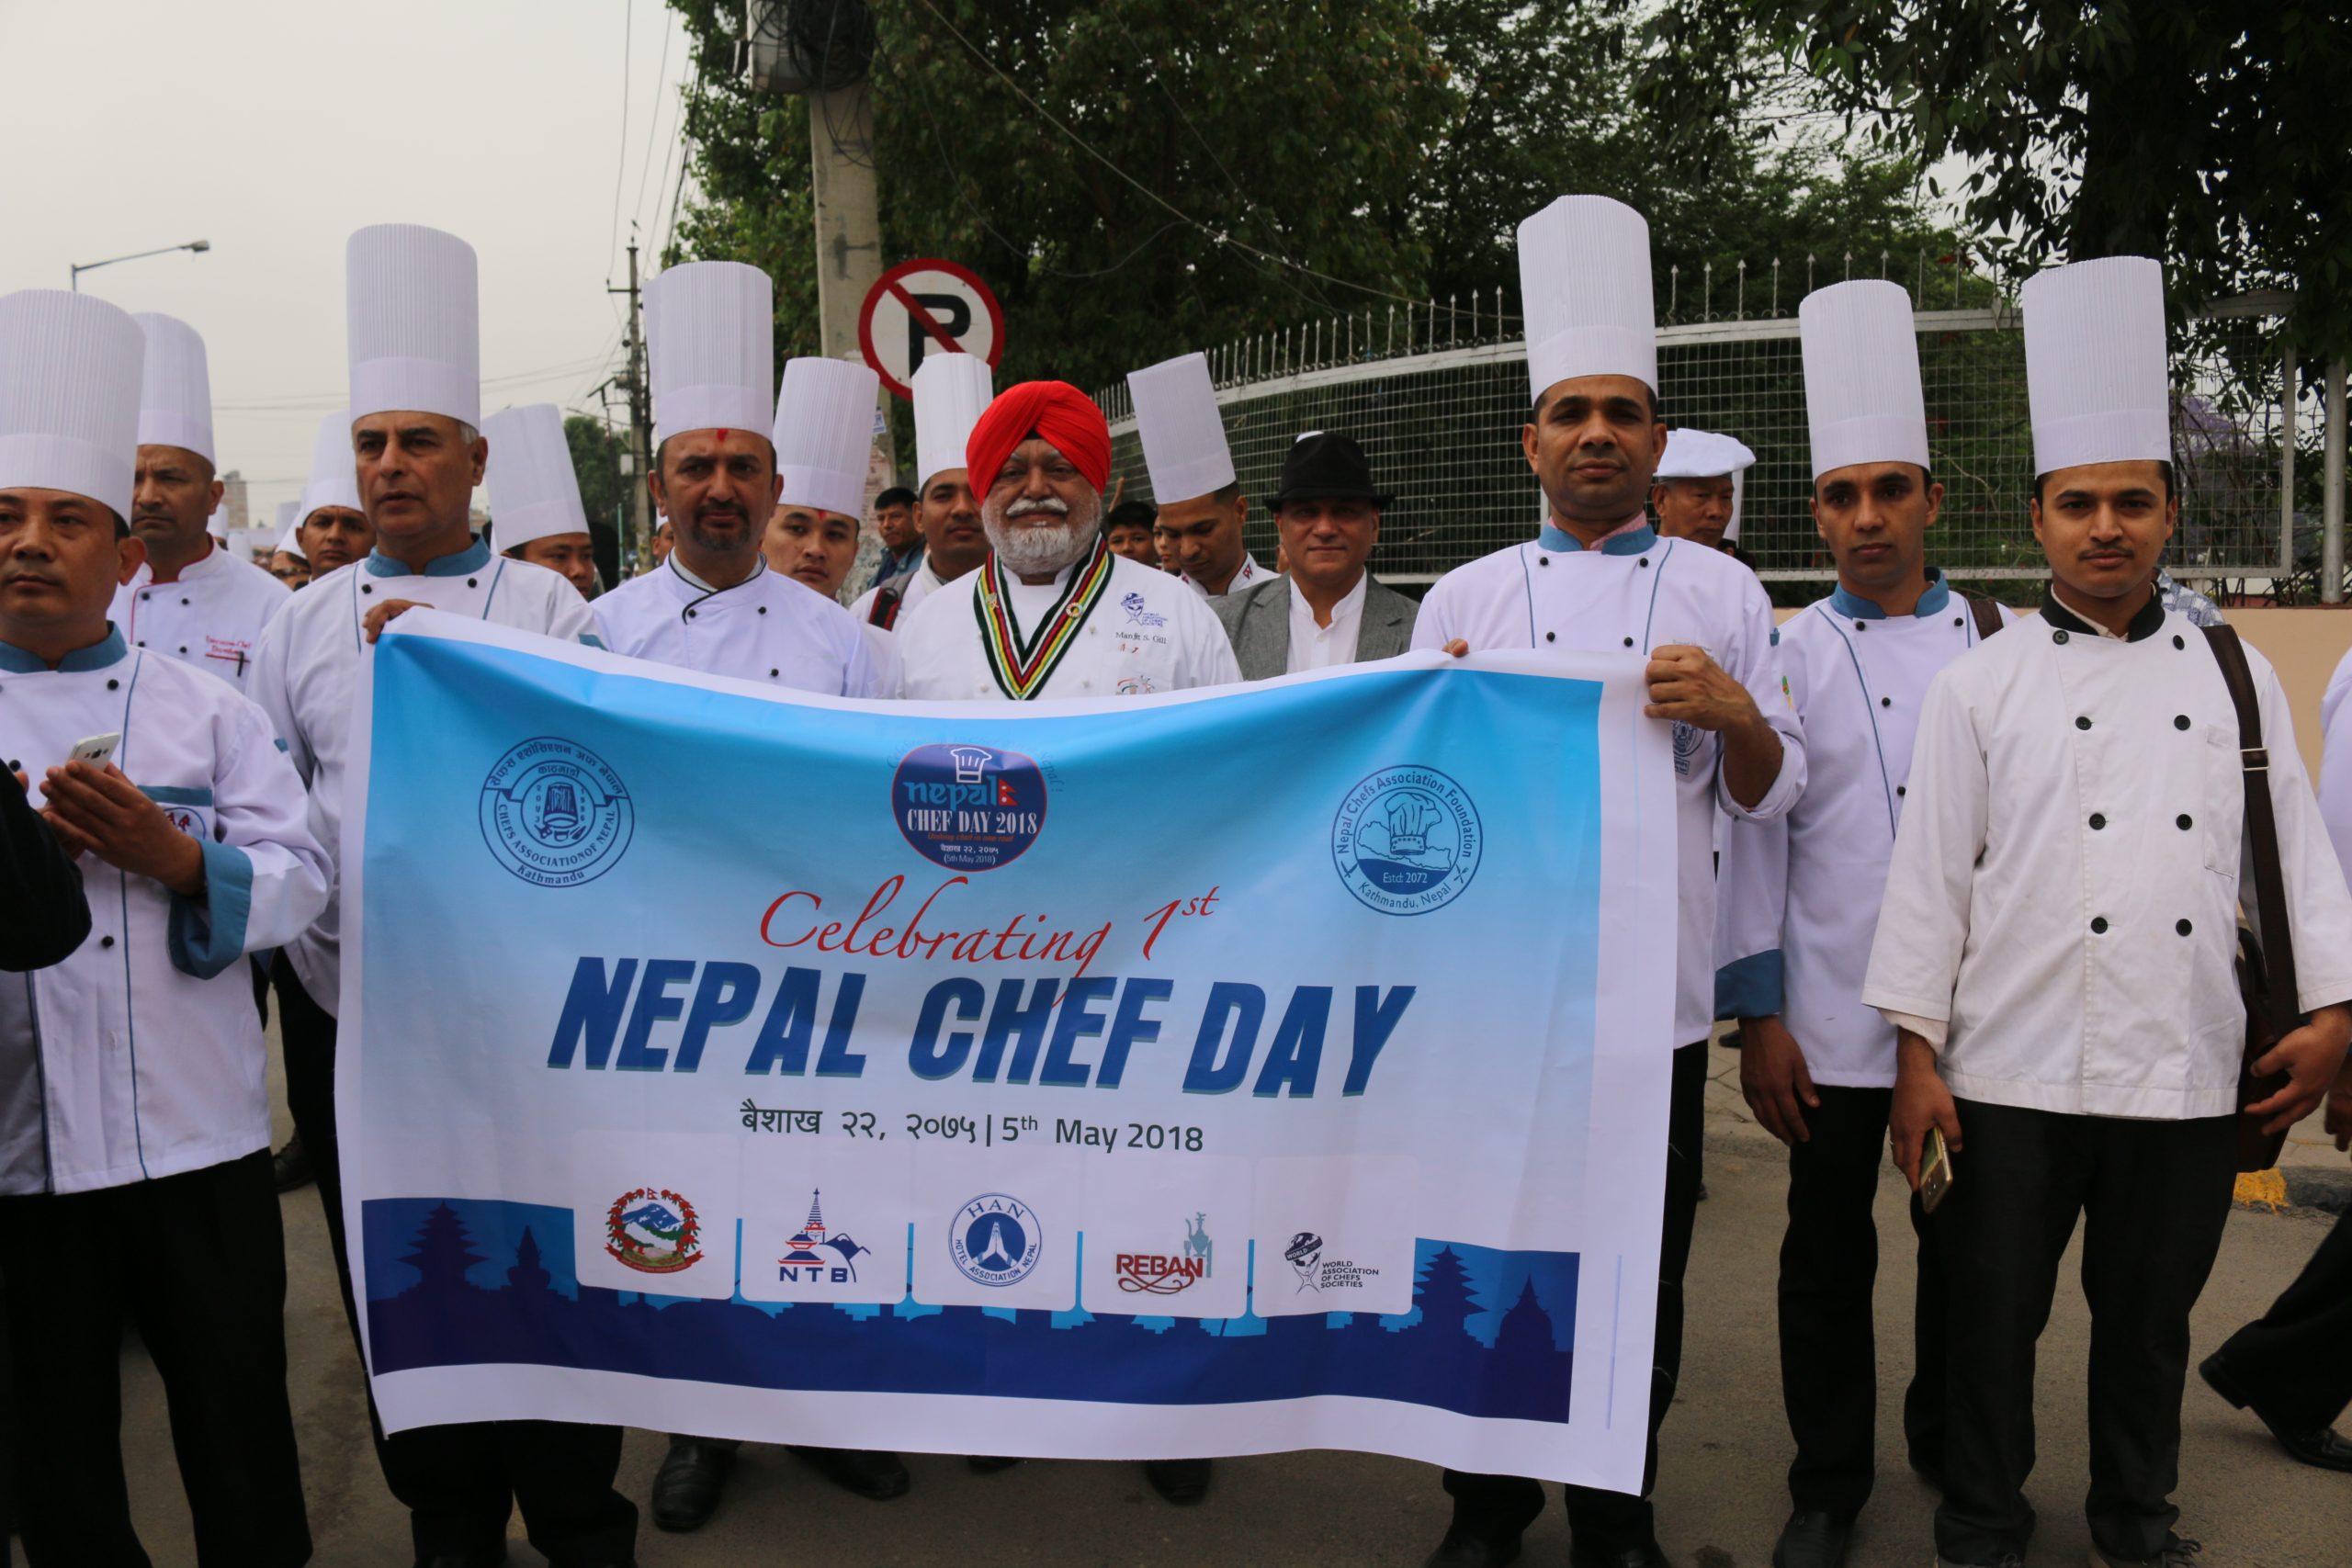 Celebrating 1st Nepal Chef Day